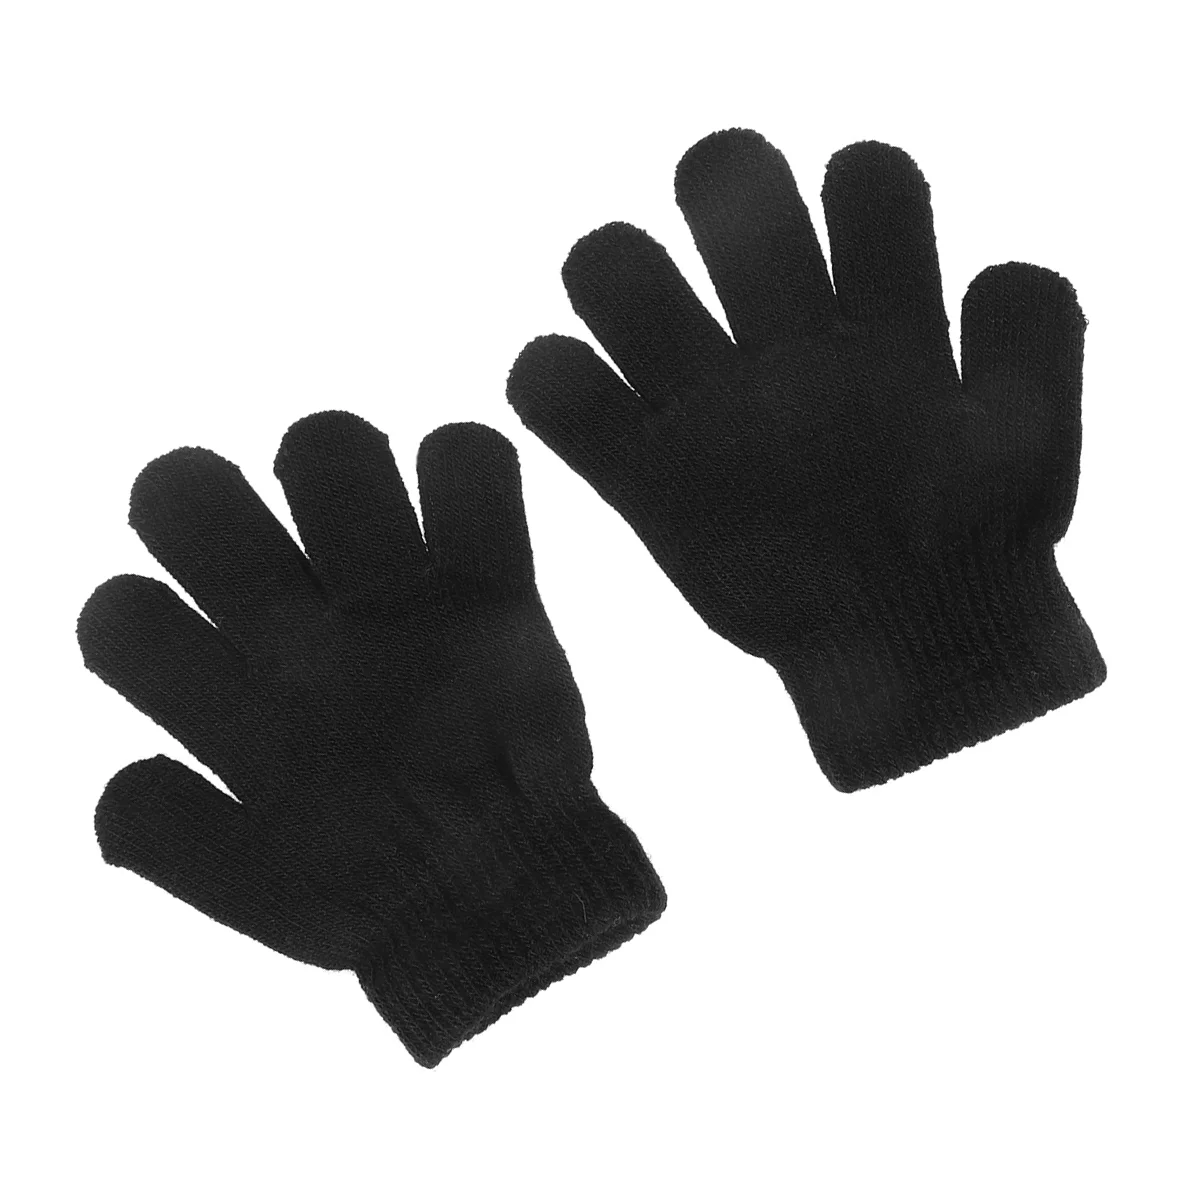 

12Pair New Fashion Kids Thick Knitted Gloves Warm Winter Gloves Children Stretch Mittens Boy Girl Hand Accessories(Black)